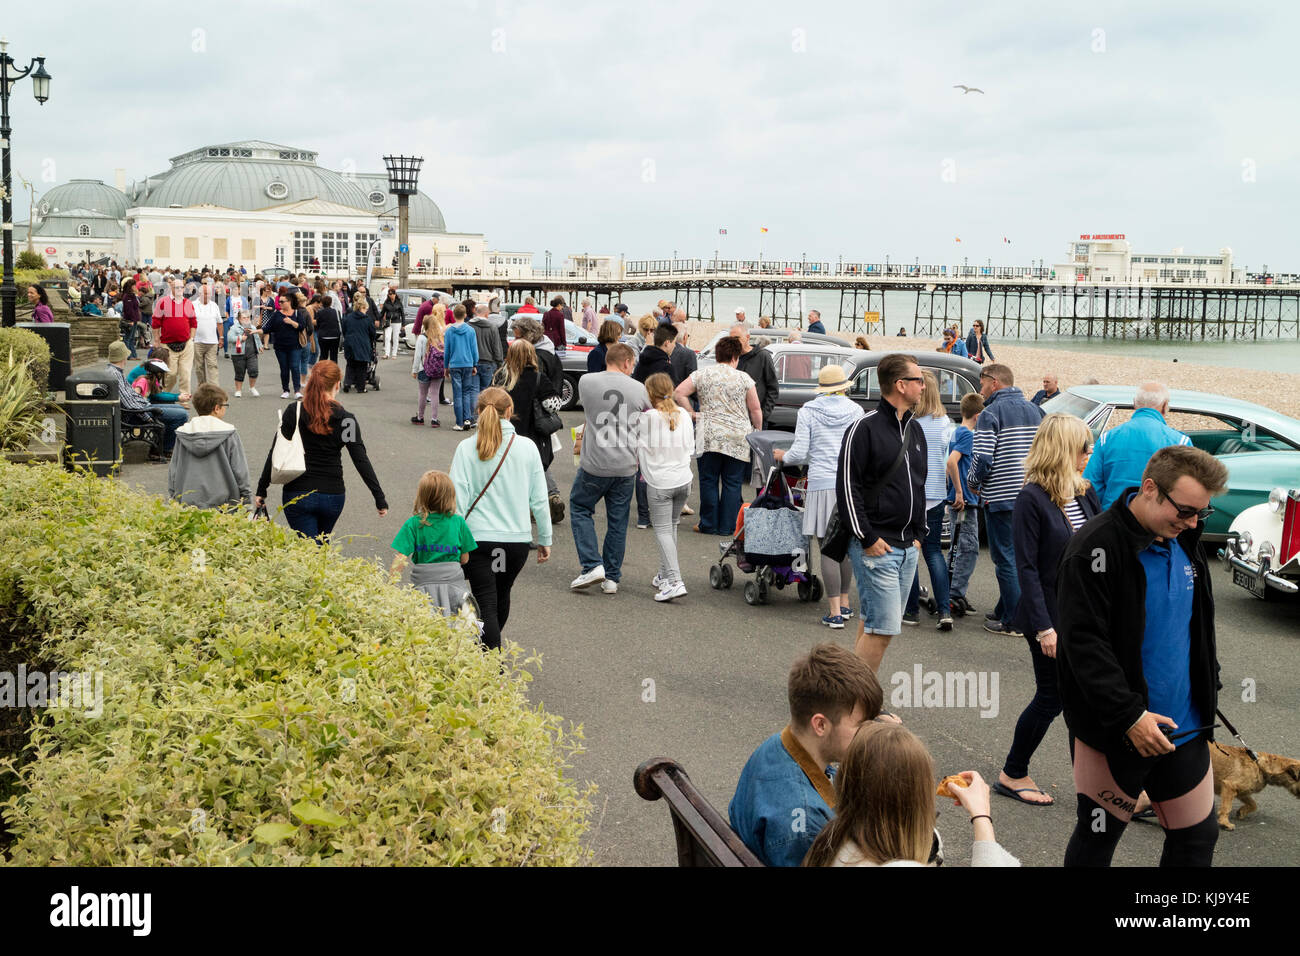 Les visiteurs et les populations locales apprécient une promenade le long du front de mer Worthing. Banque D'Images